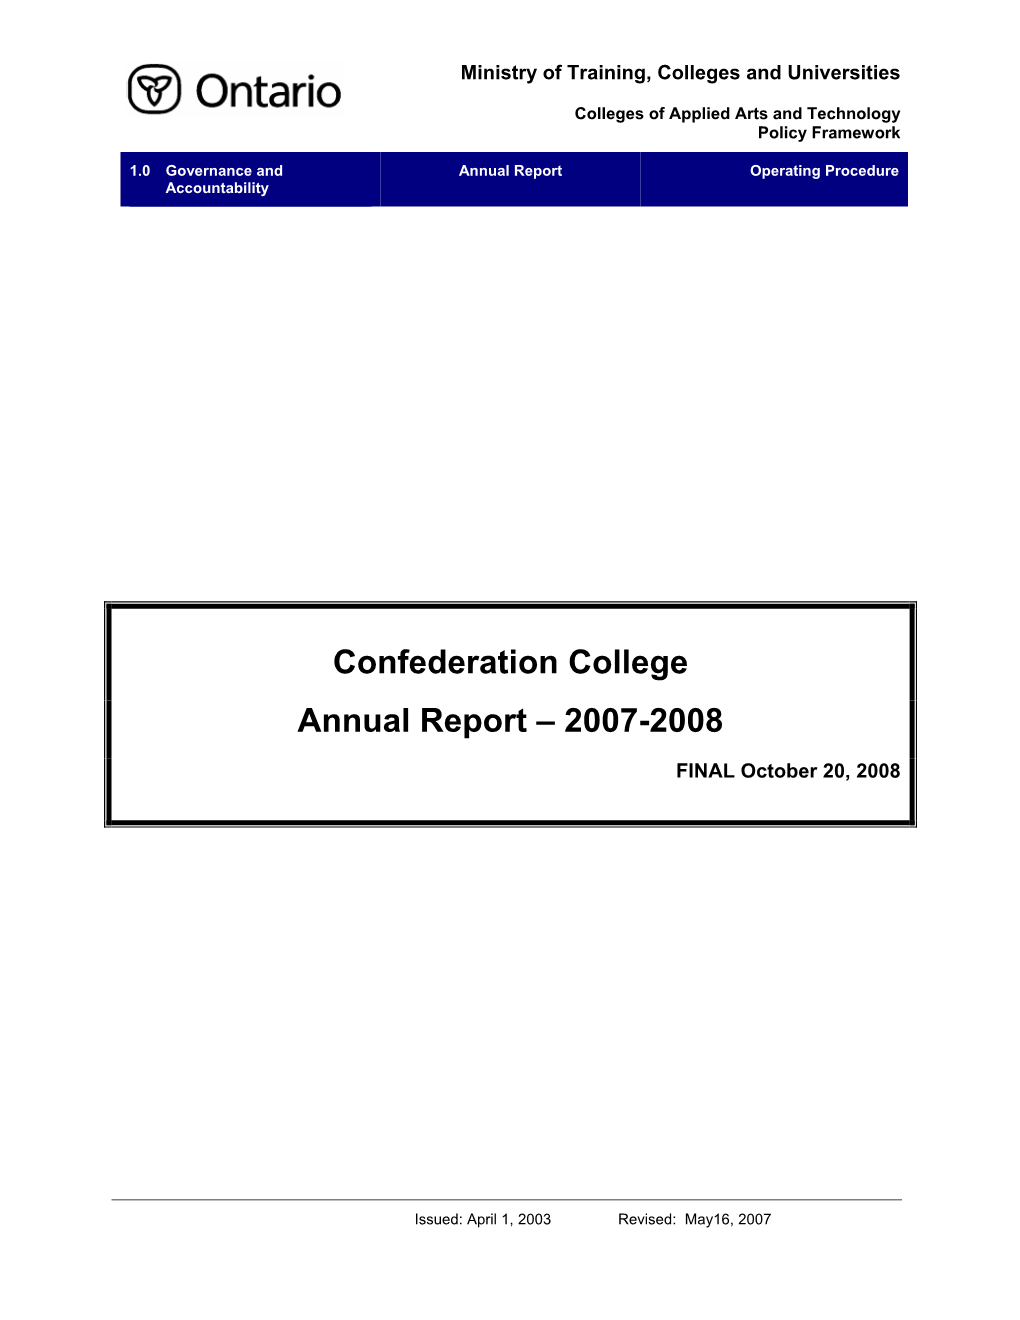 Confederation College Annual Report – 2007-2008